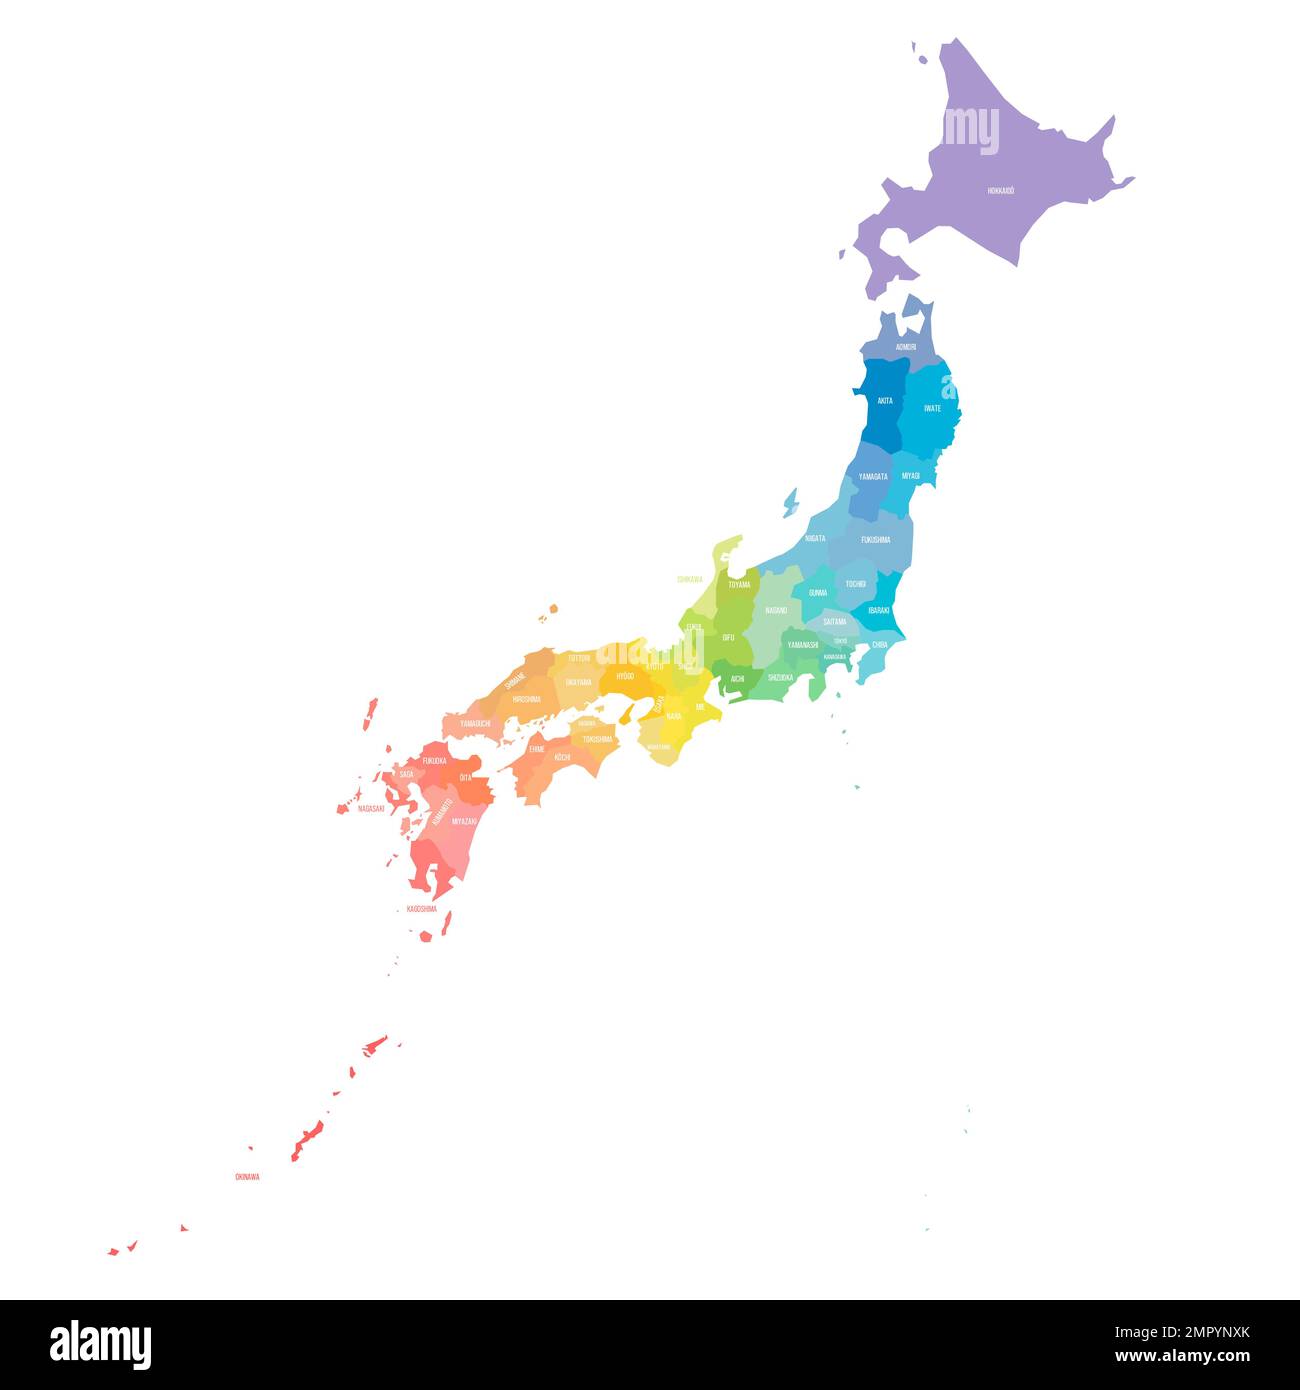 Politische Karte der Verwaltungseinheiten Japans - Präfekturen, Metropilis Tokio, Territorium Hokaido und städtische Präfekturen Kyoto und Osaka. Farbenfroher rai Stock Vektor